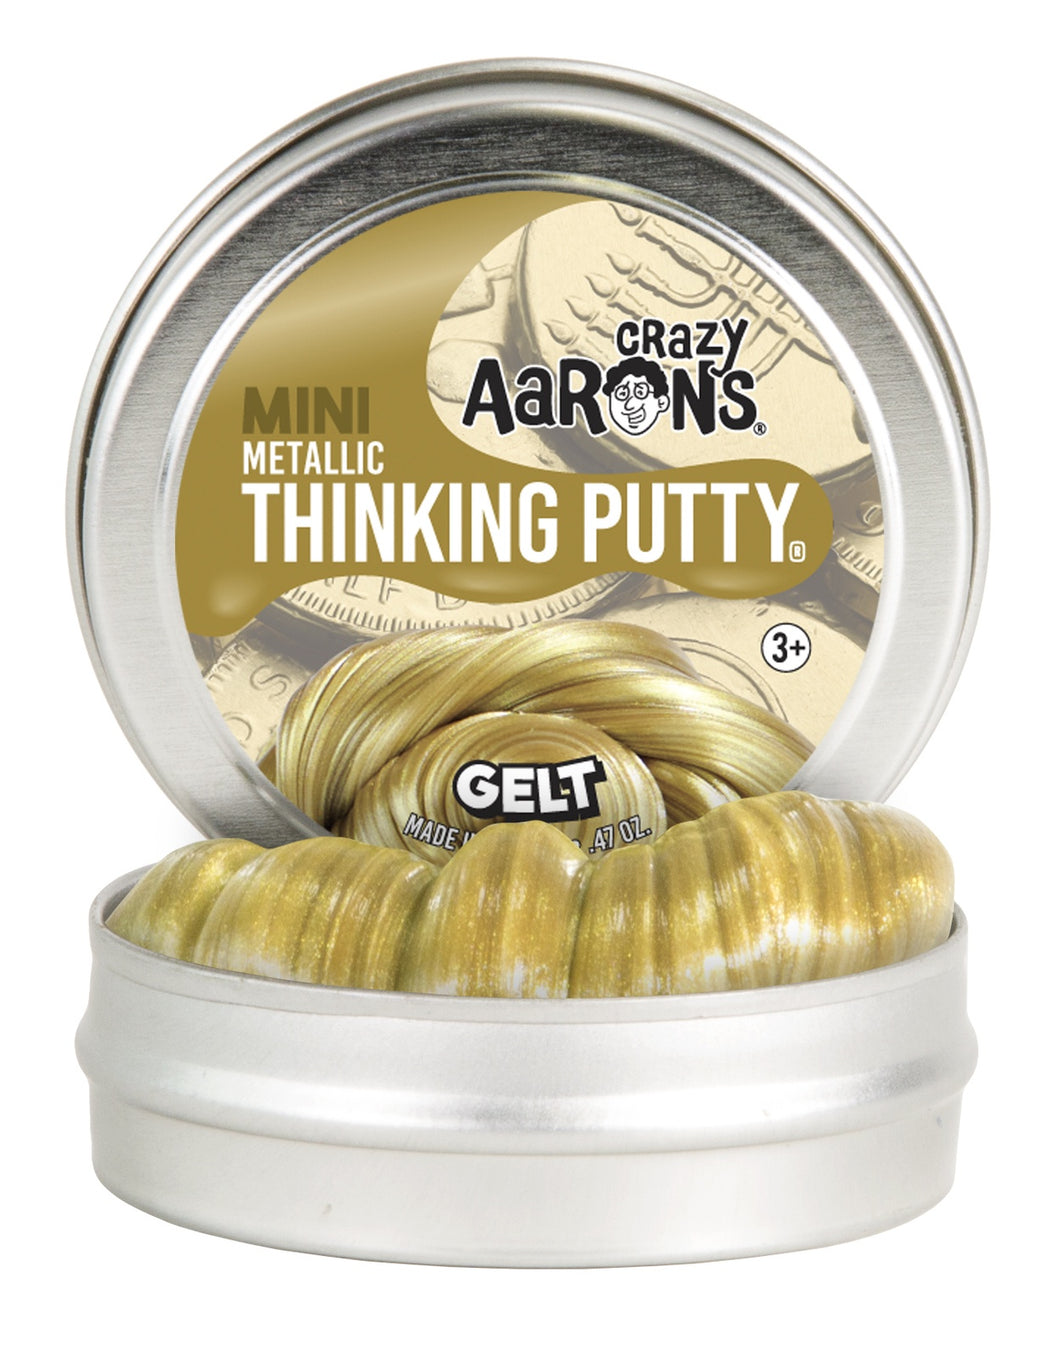 Crazy Aaron's Thinking Putty: Gelt Gold 2